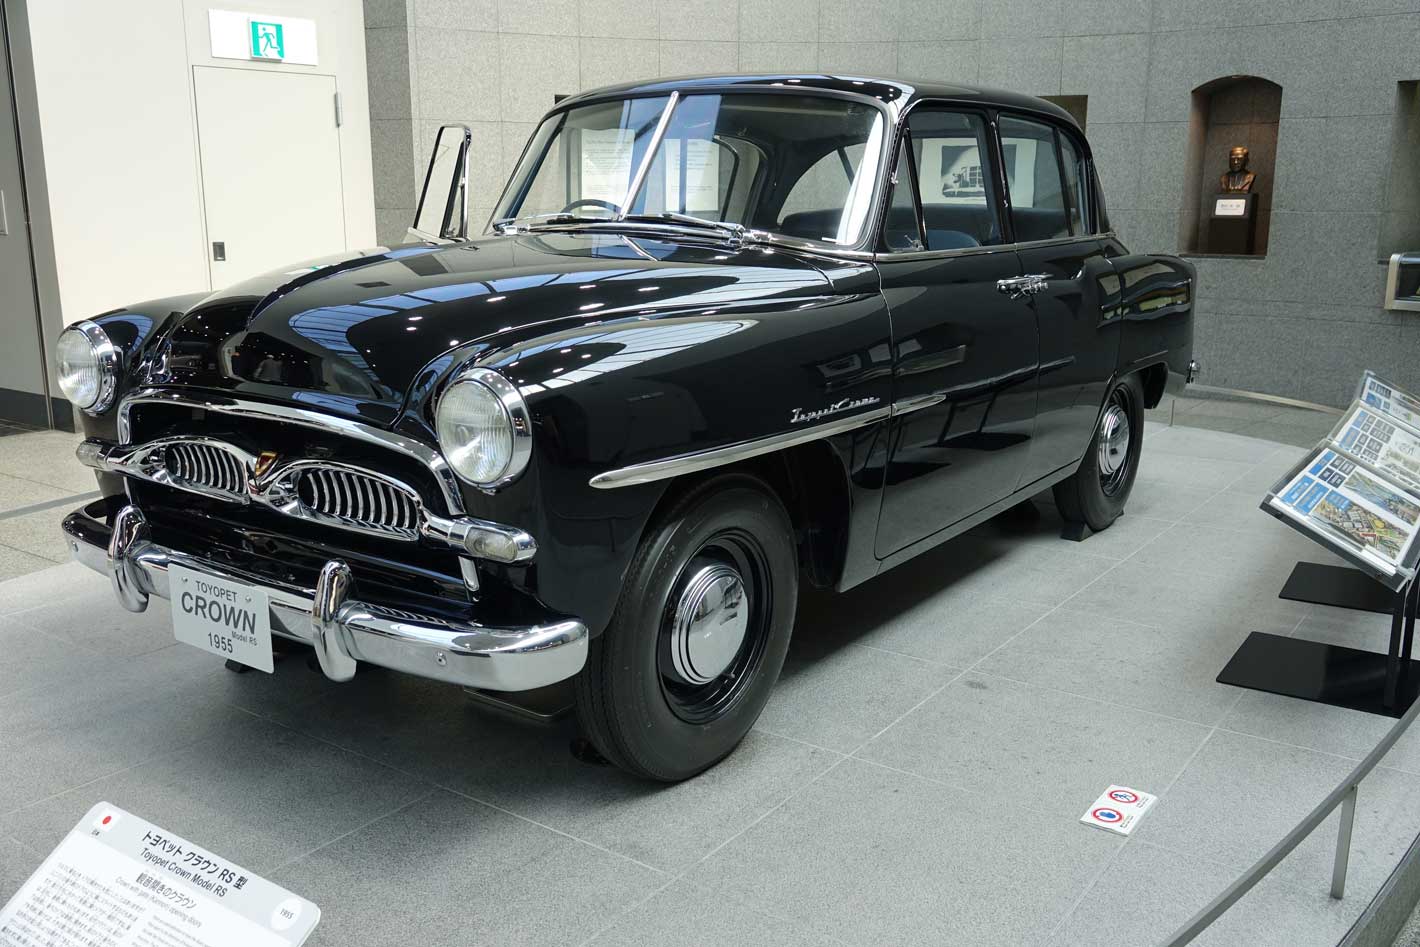 Em 1955 o Toypet Crown foi um carro fundamental para a Toyota, dando à marca uma dimensão internacional